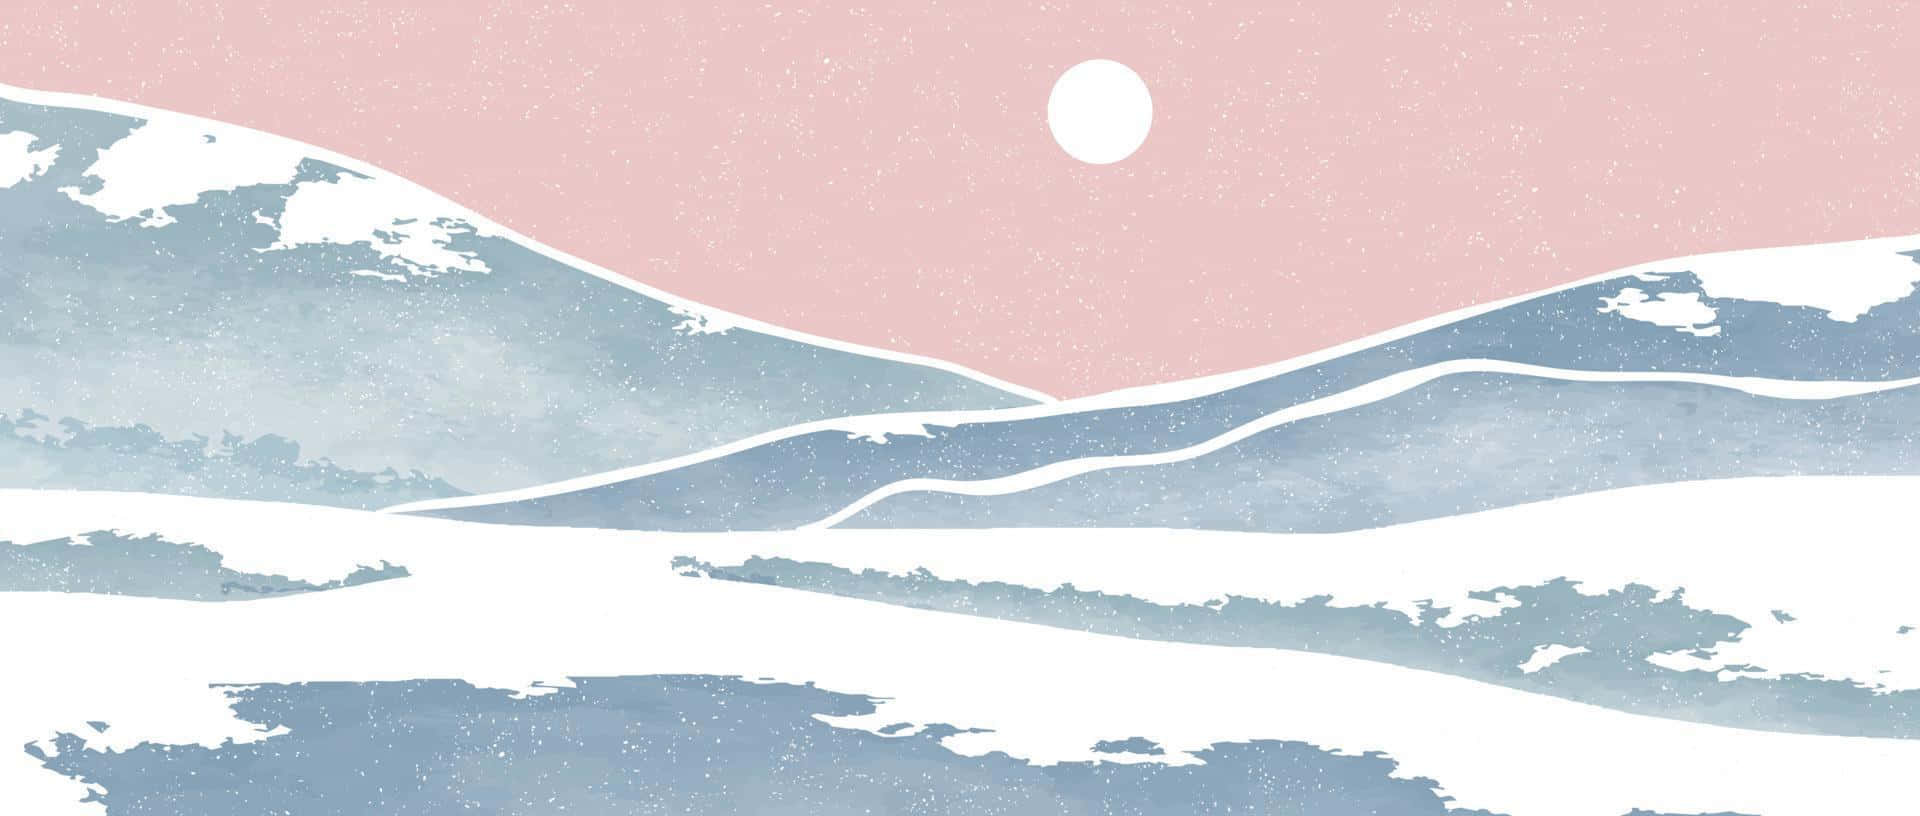 Minimalist Winter Landscape Art Wallpaper